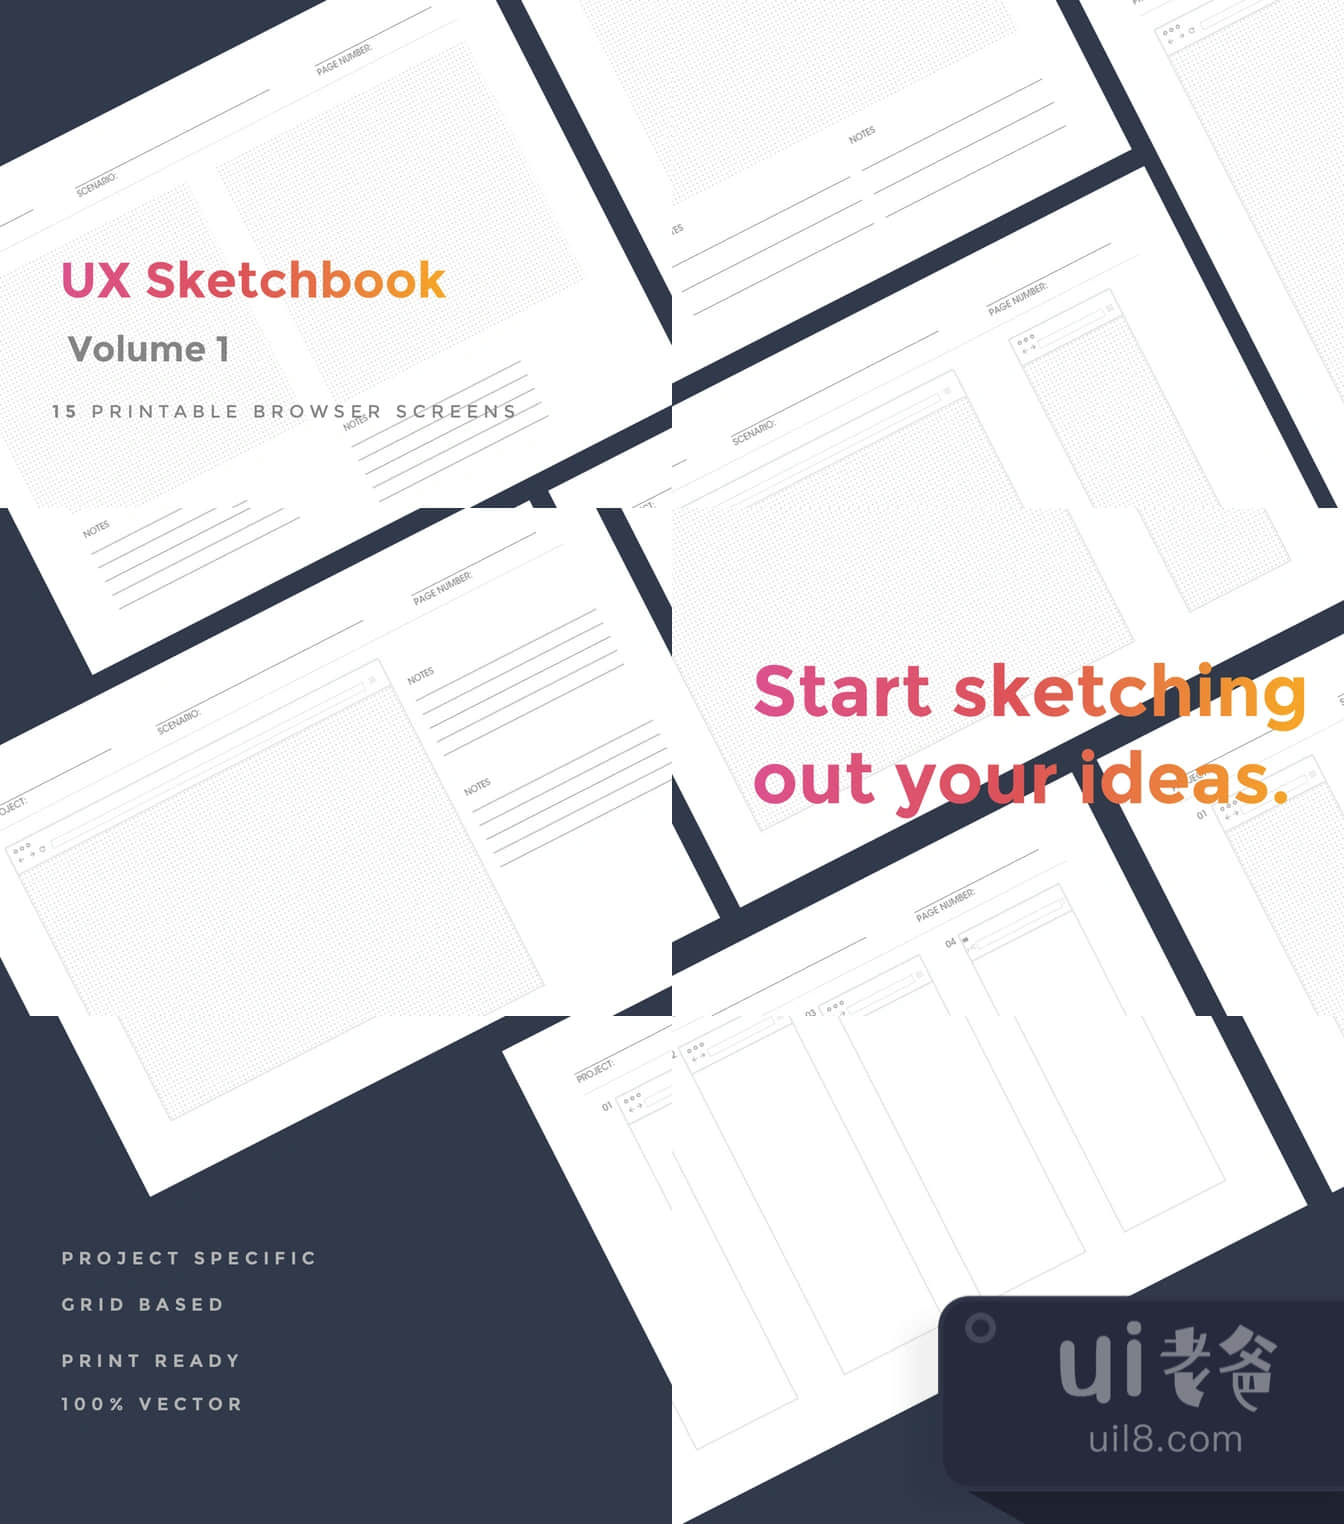 用户体验素描书第一册 (UX Sketchbook Vol 1)插图